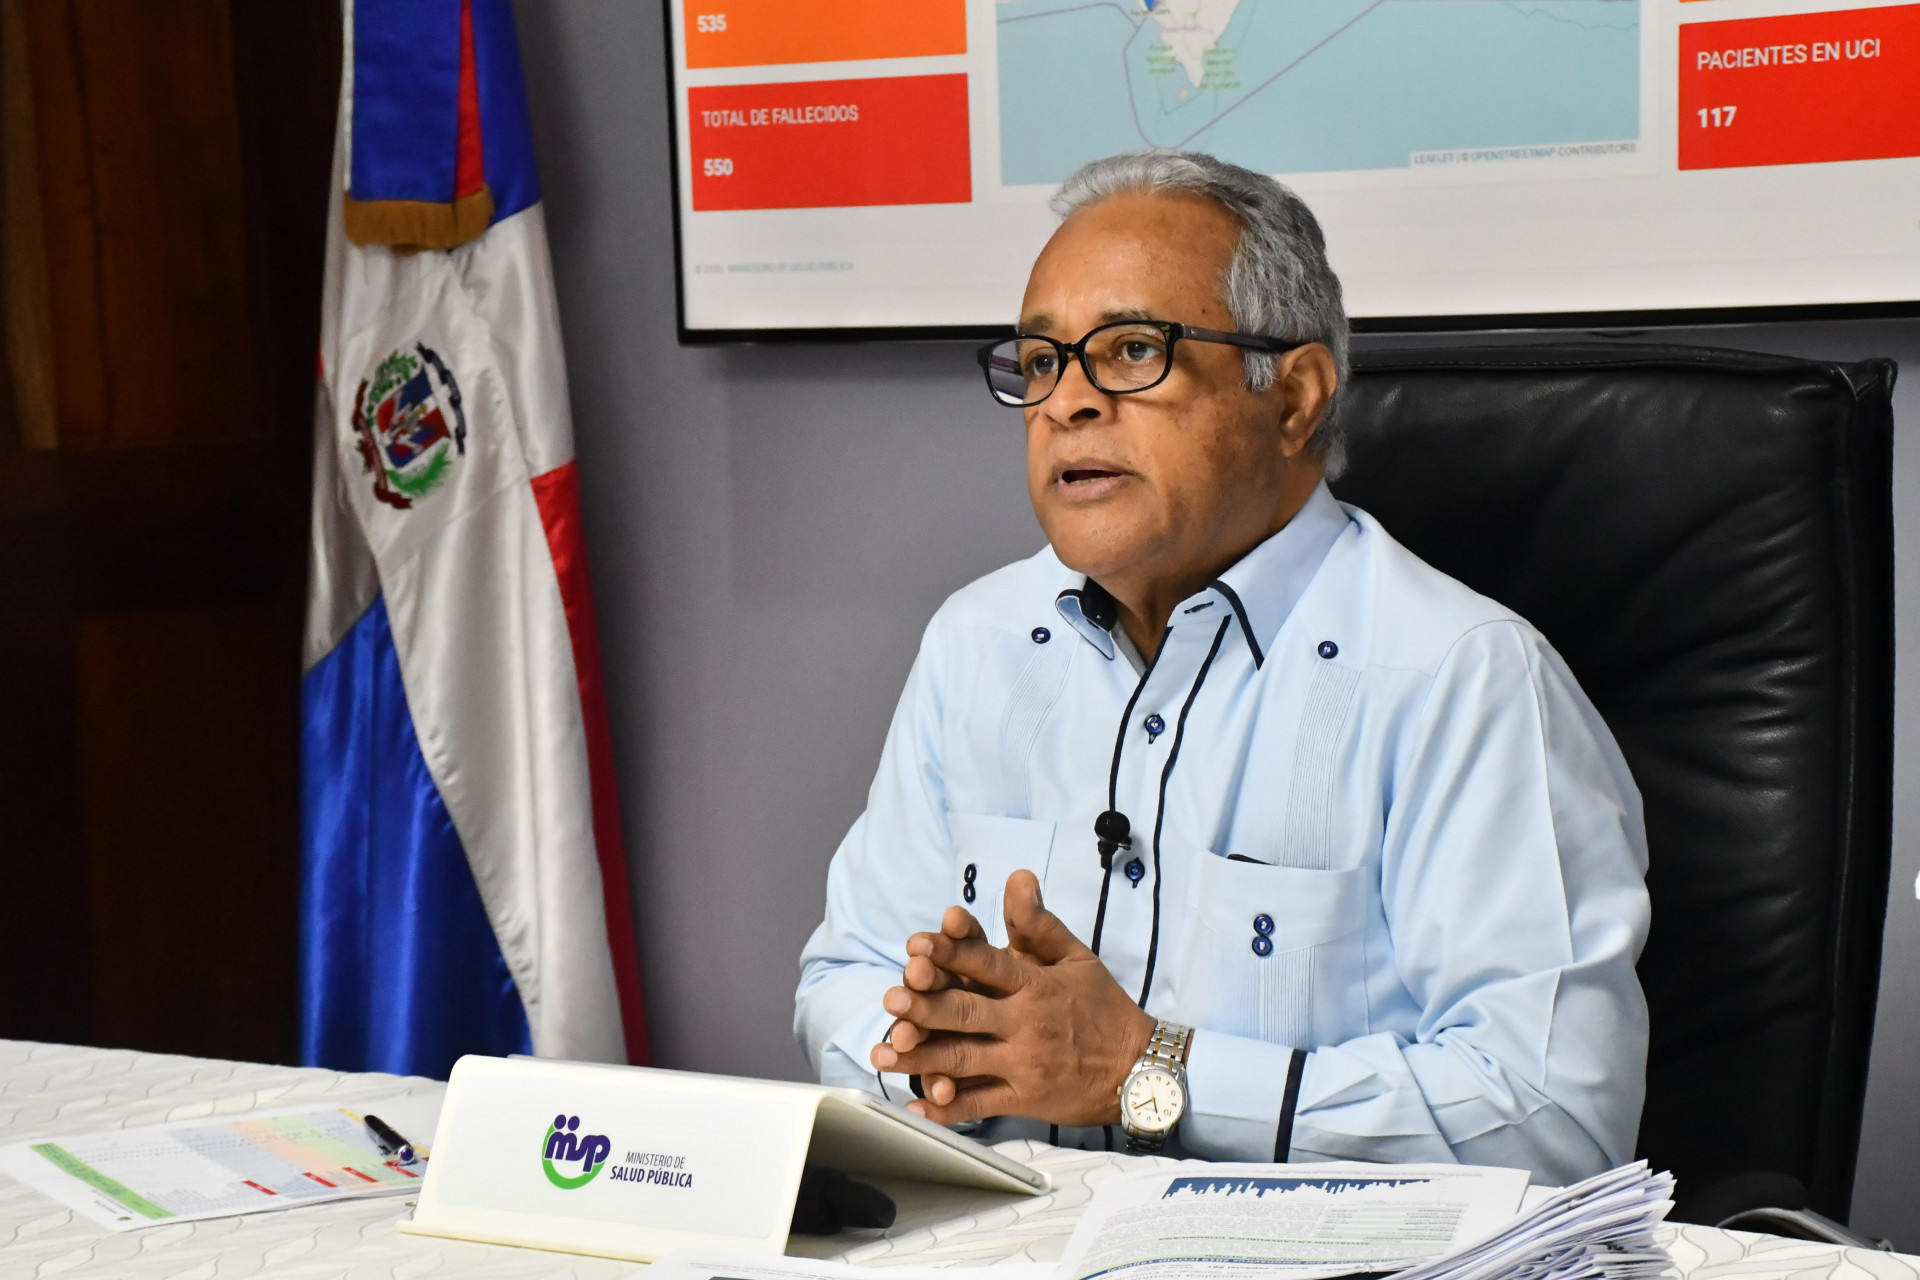 REPÚBLICA DOMINICANA: COVID-19 no ha desaparecido: ministro de Salud Pública exhorta a mantener medidas prevención y evitar desplazamientos al interior